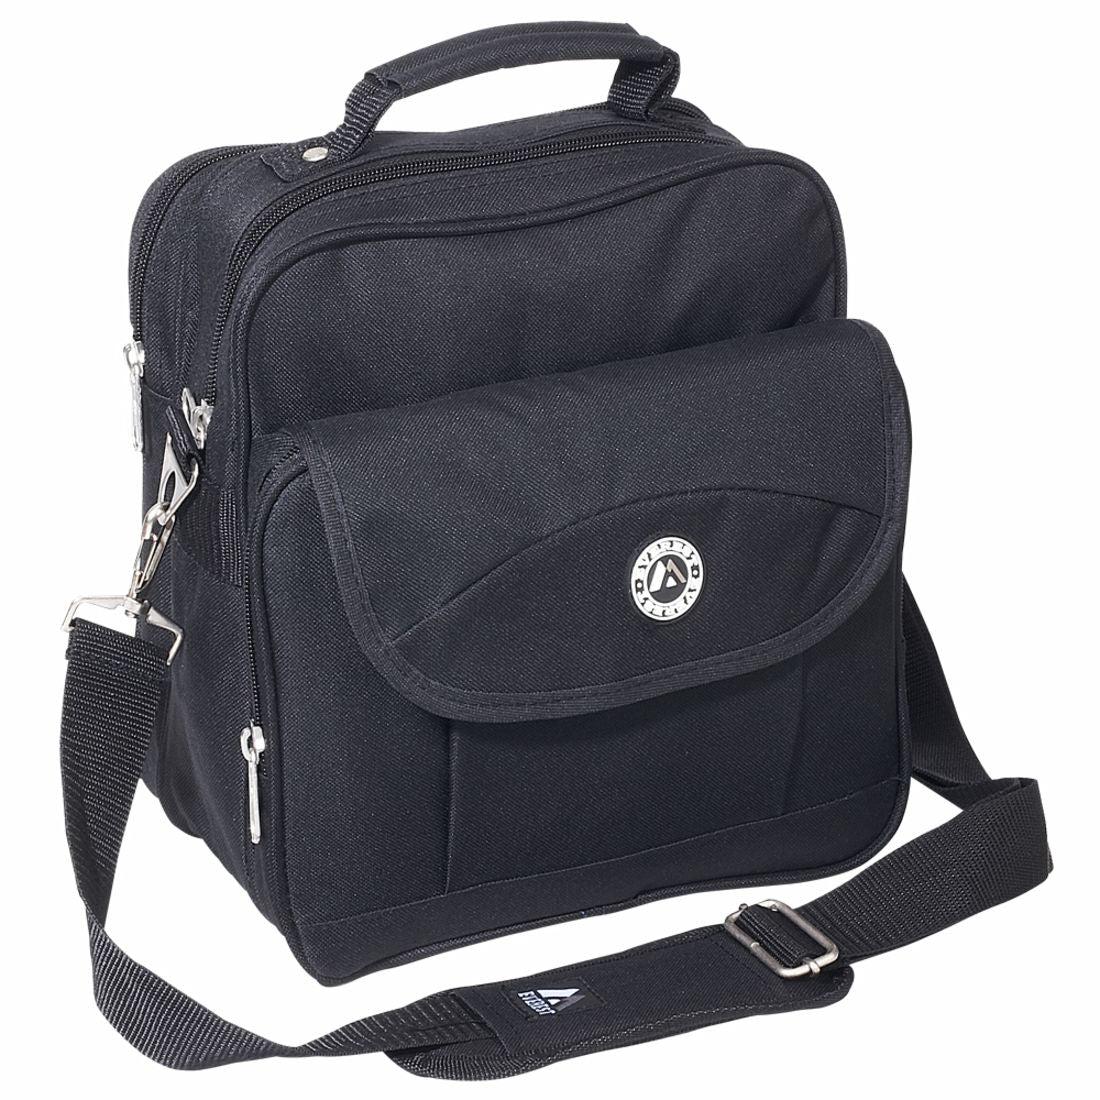 Everest Stylish Everyday Deluxe Utility Bag Large